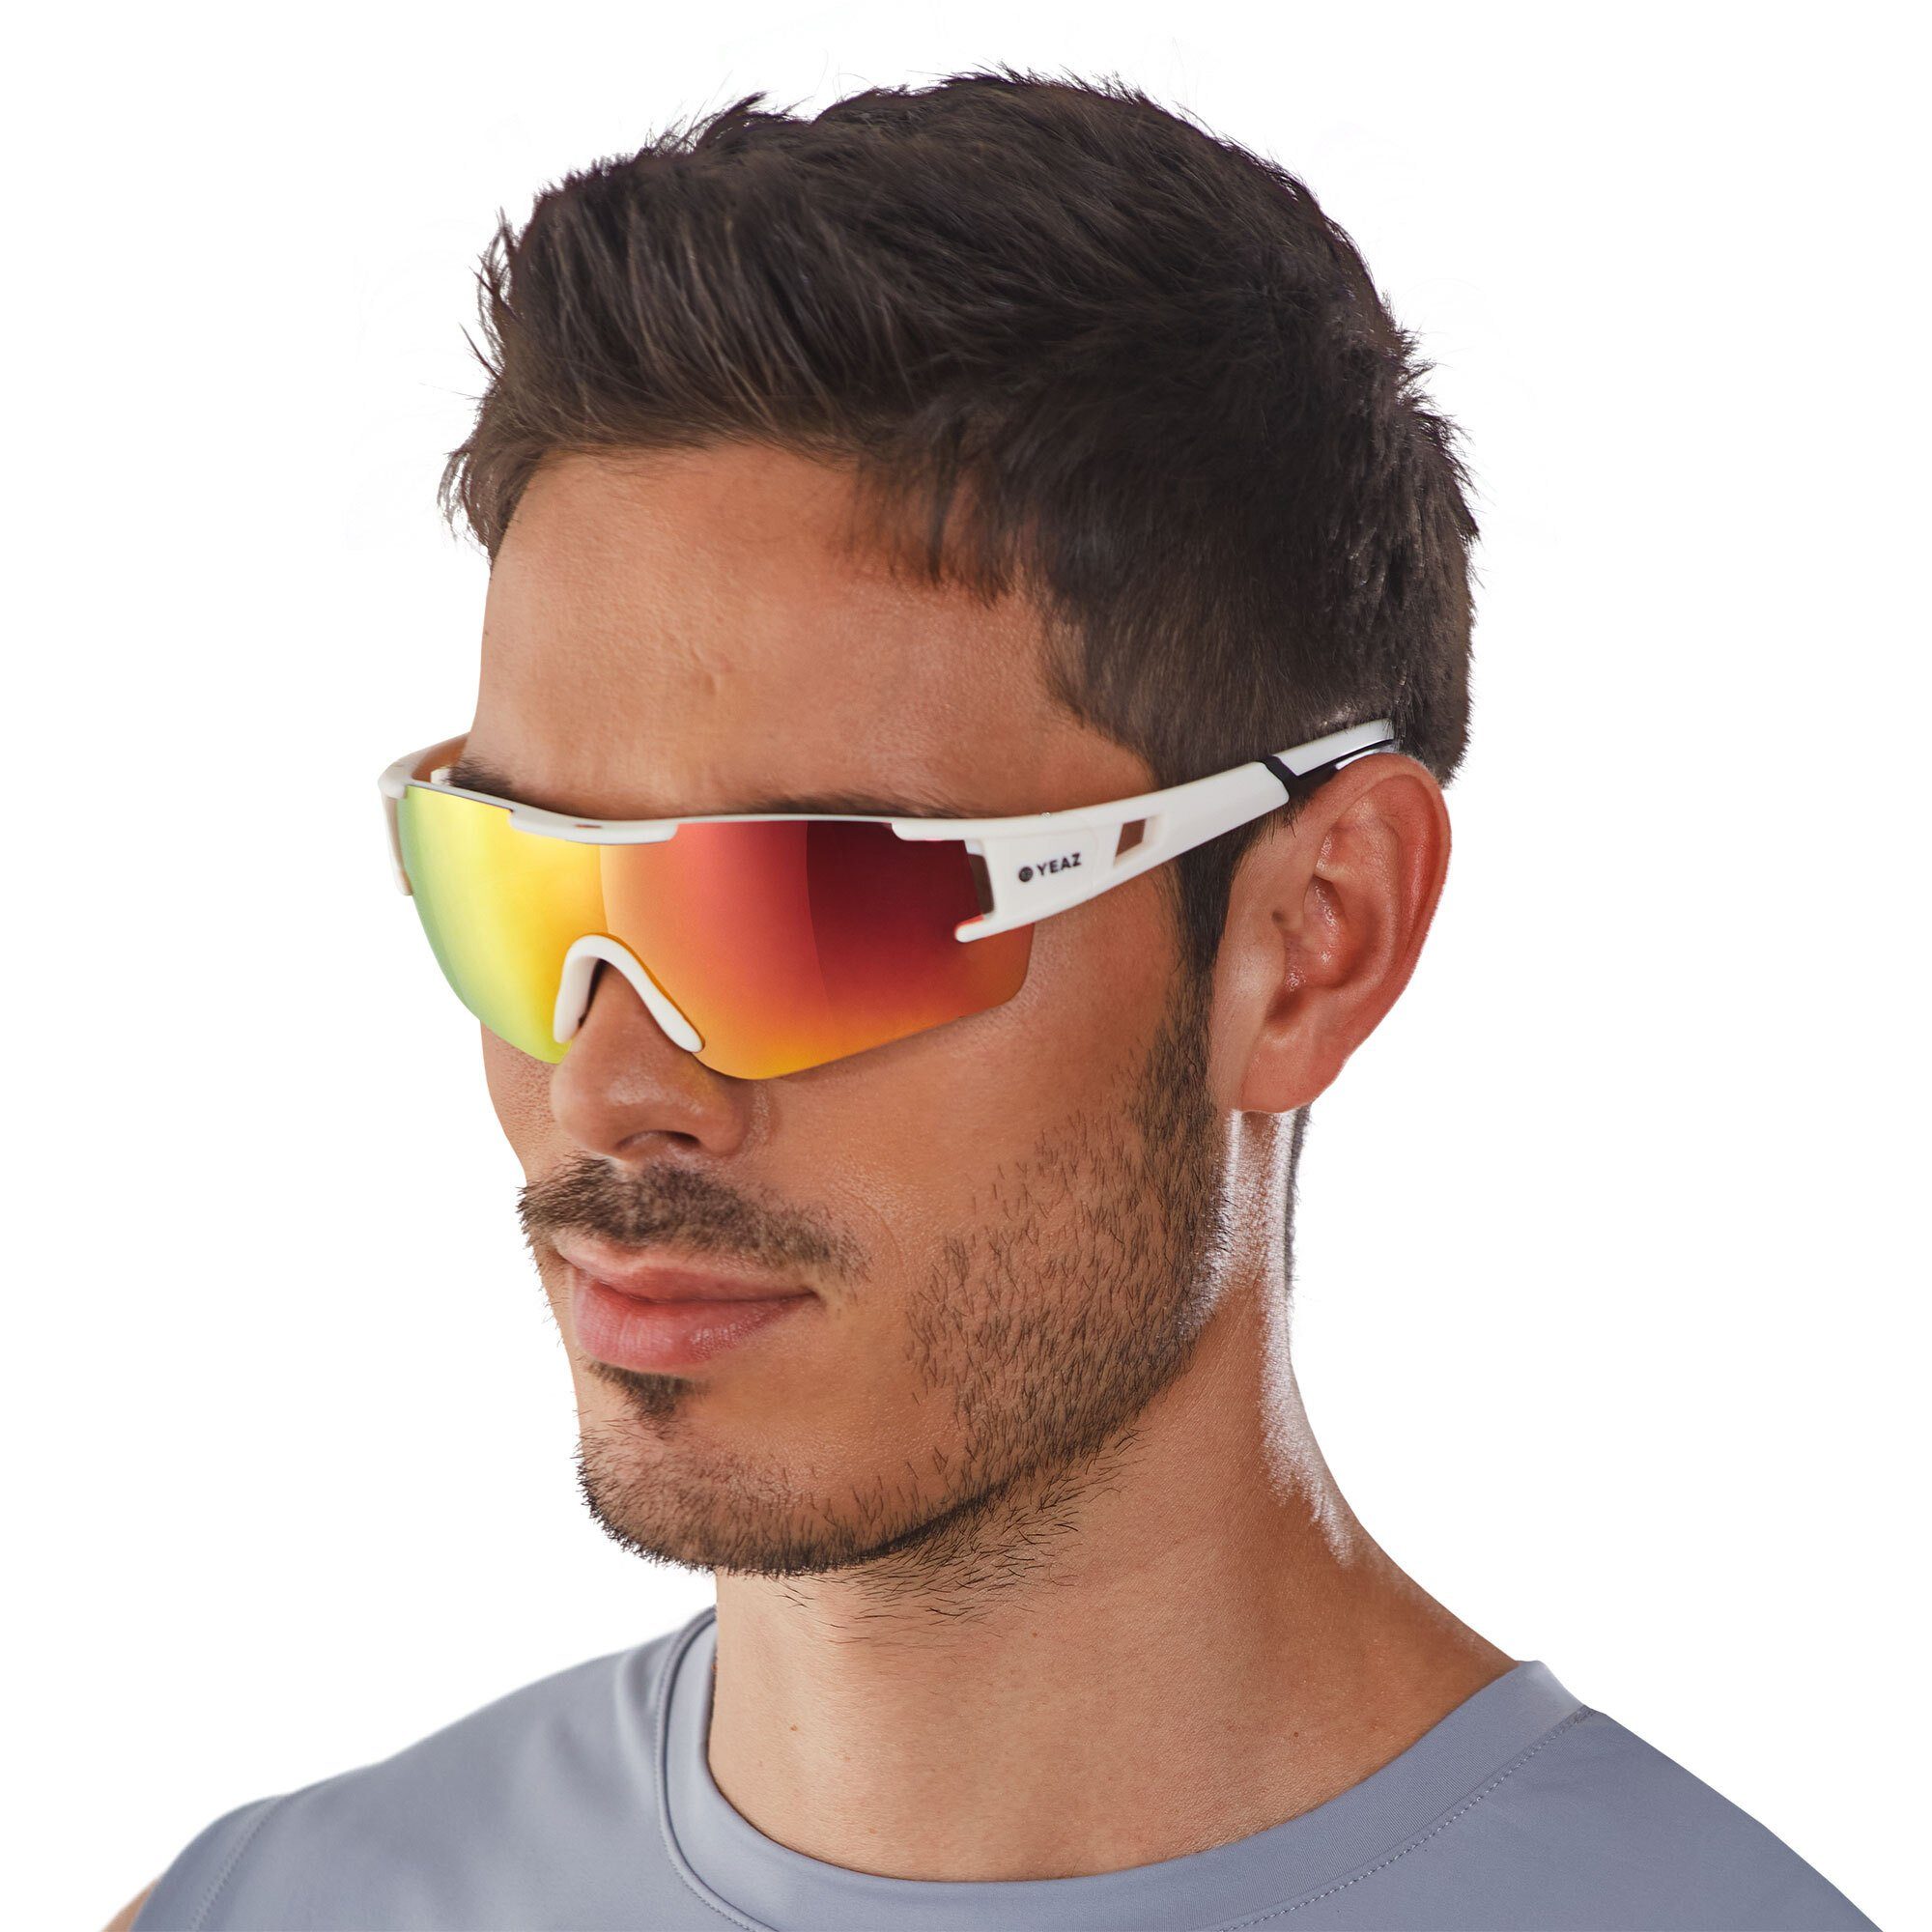 YEAZ Sportbrille SUNBLOW sport-sonnenbrille creme white/pink, Guter Schutz bei optimierter Sicht | Brillen